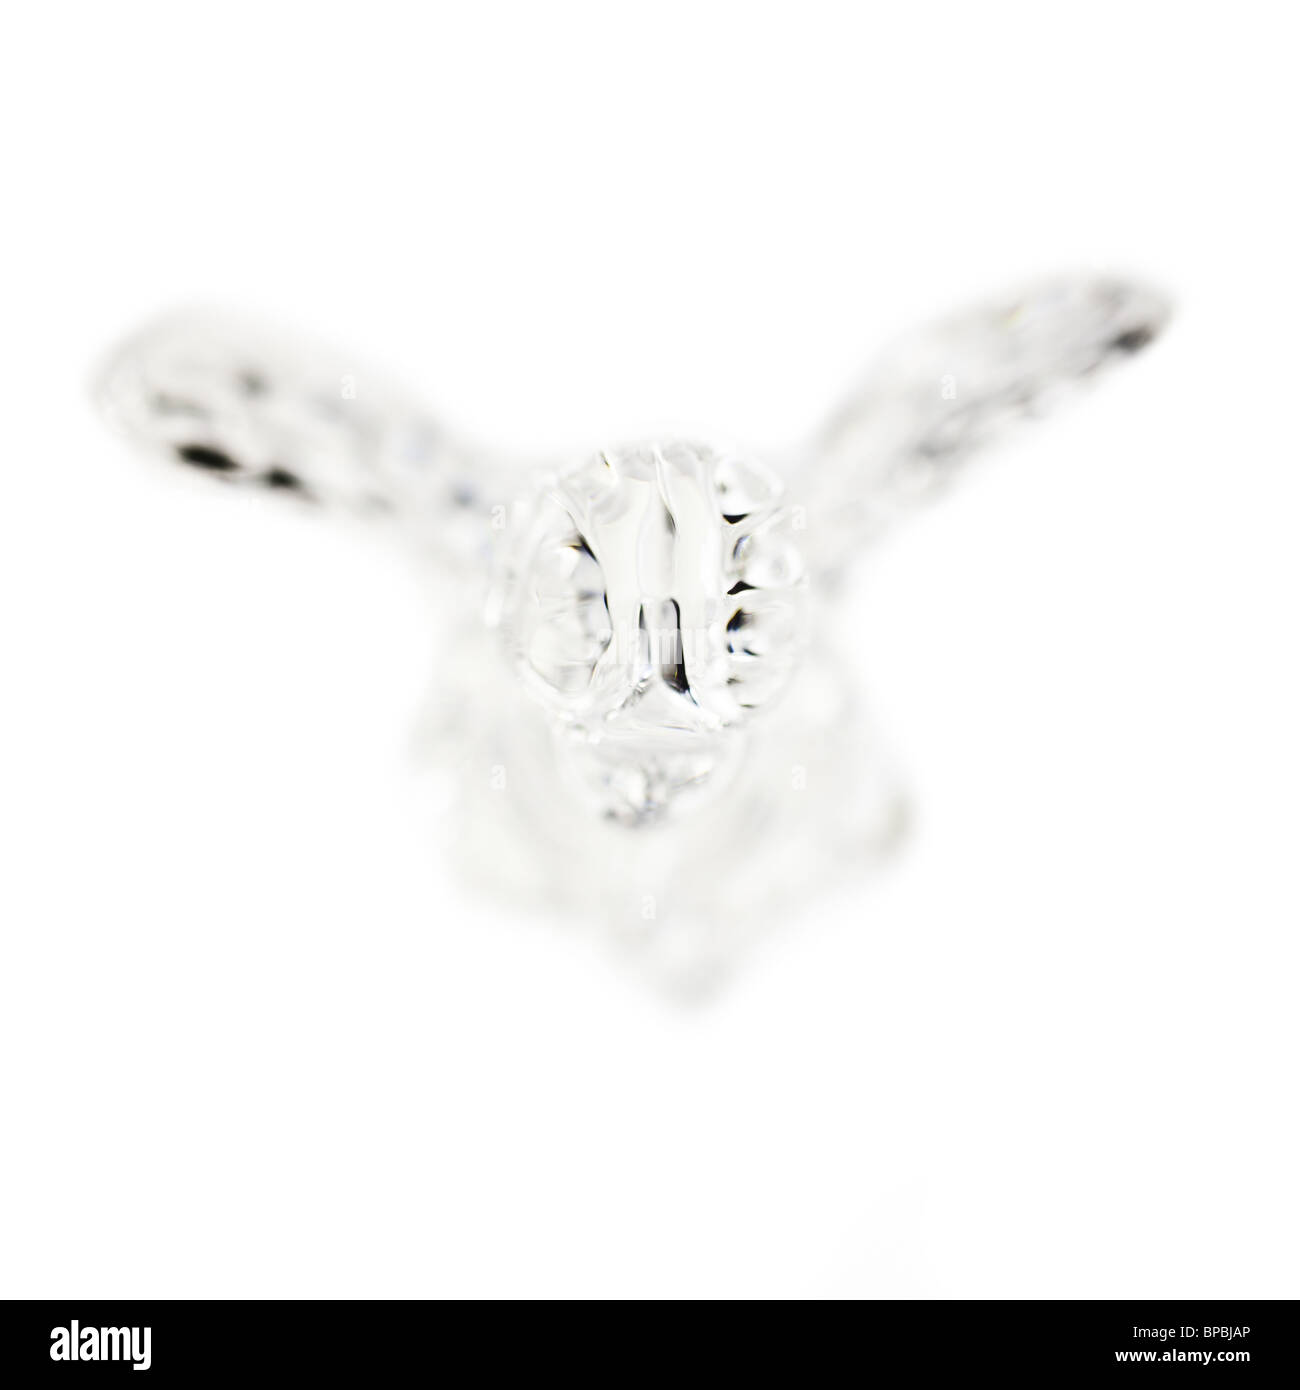 Dekorative Kristall Engel auf einem weißen Hintergrund. Stockfoto